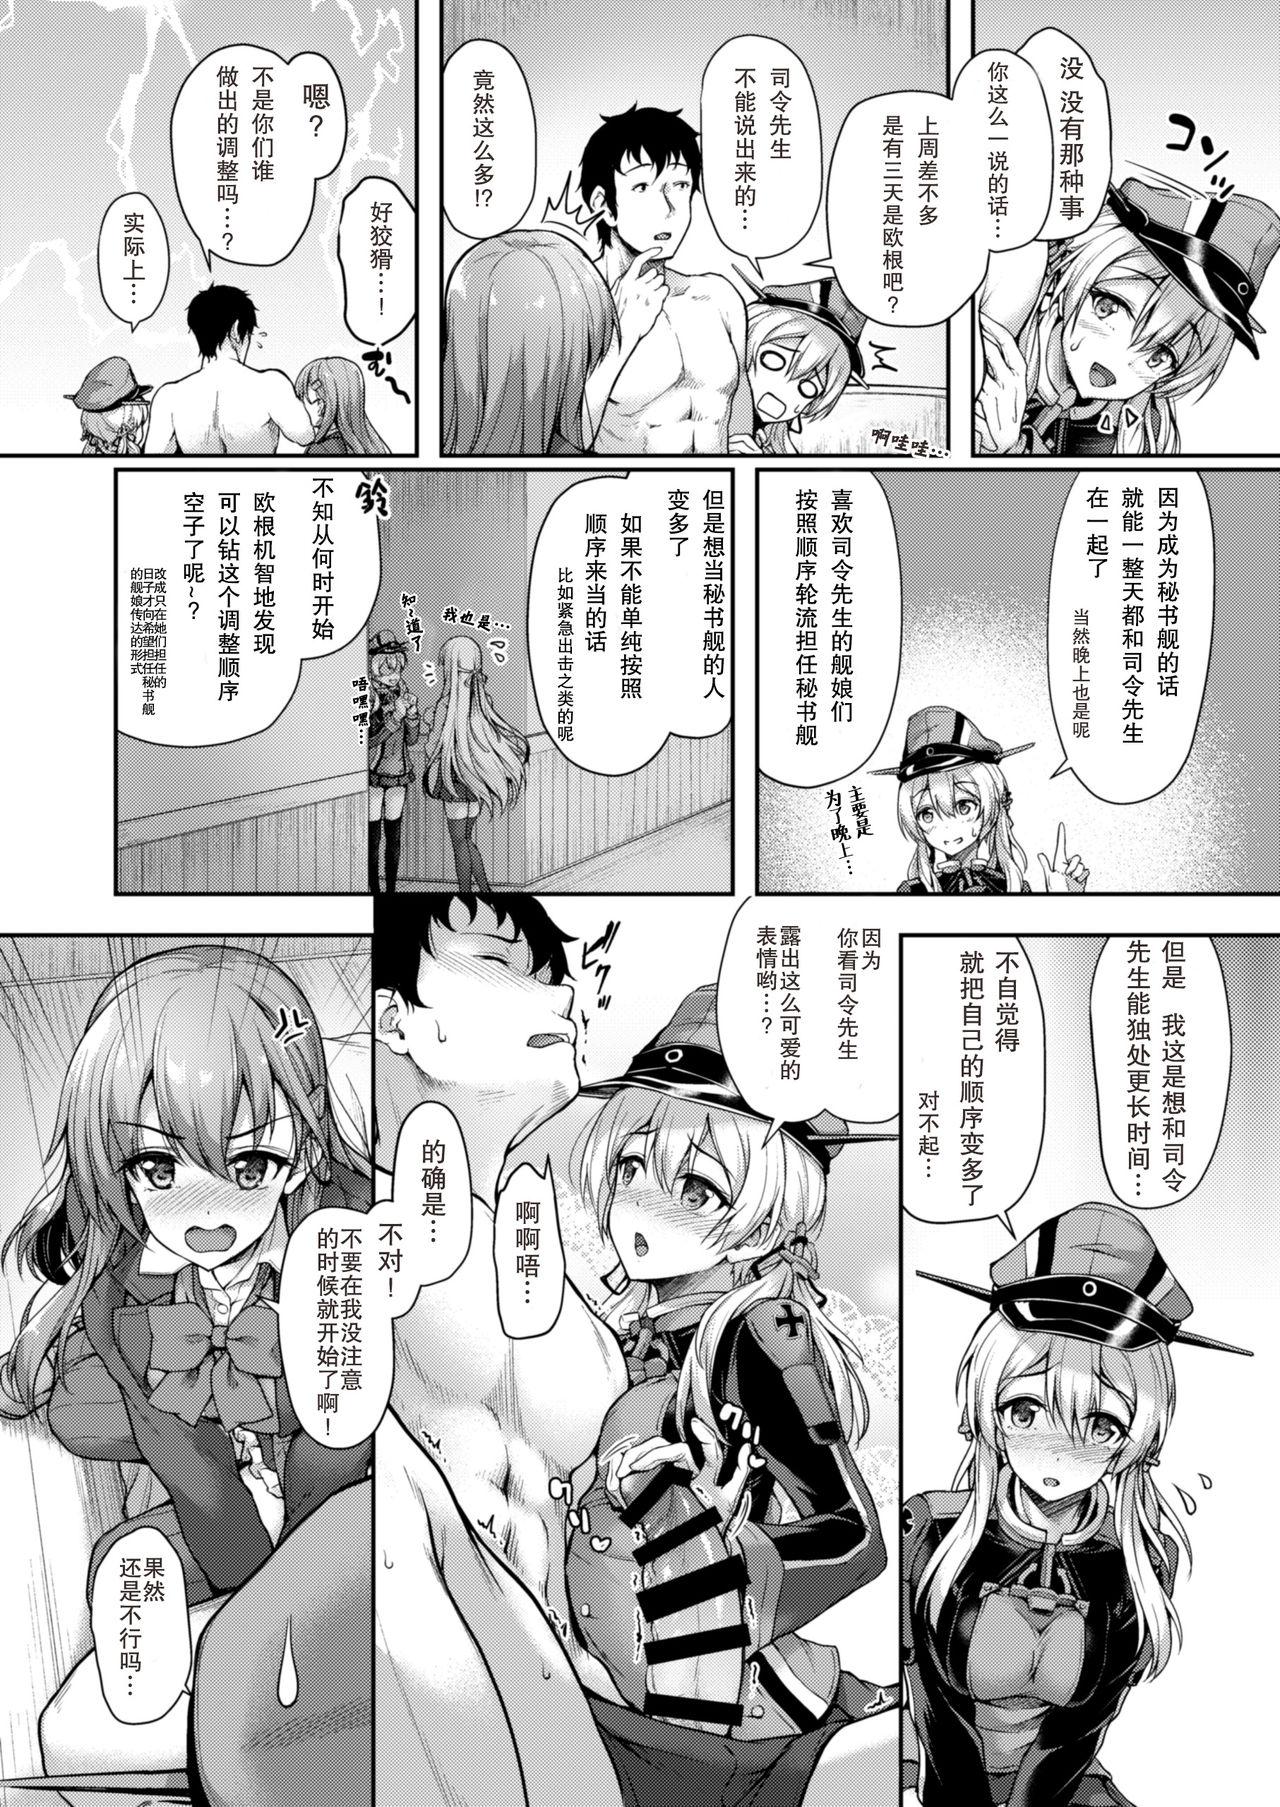 Admiral-san Hitorijime! 7